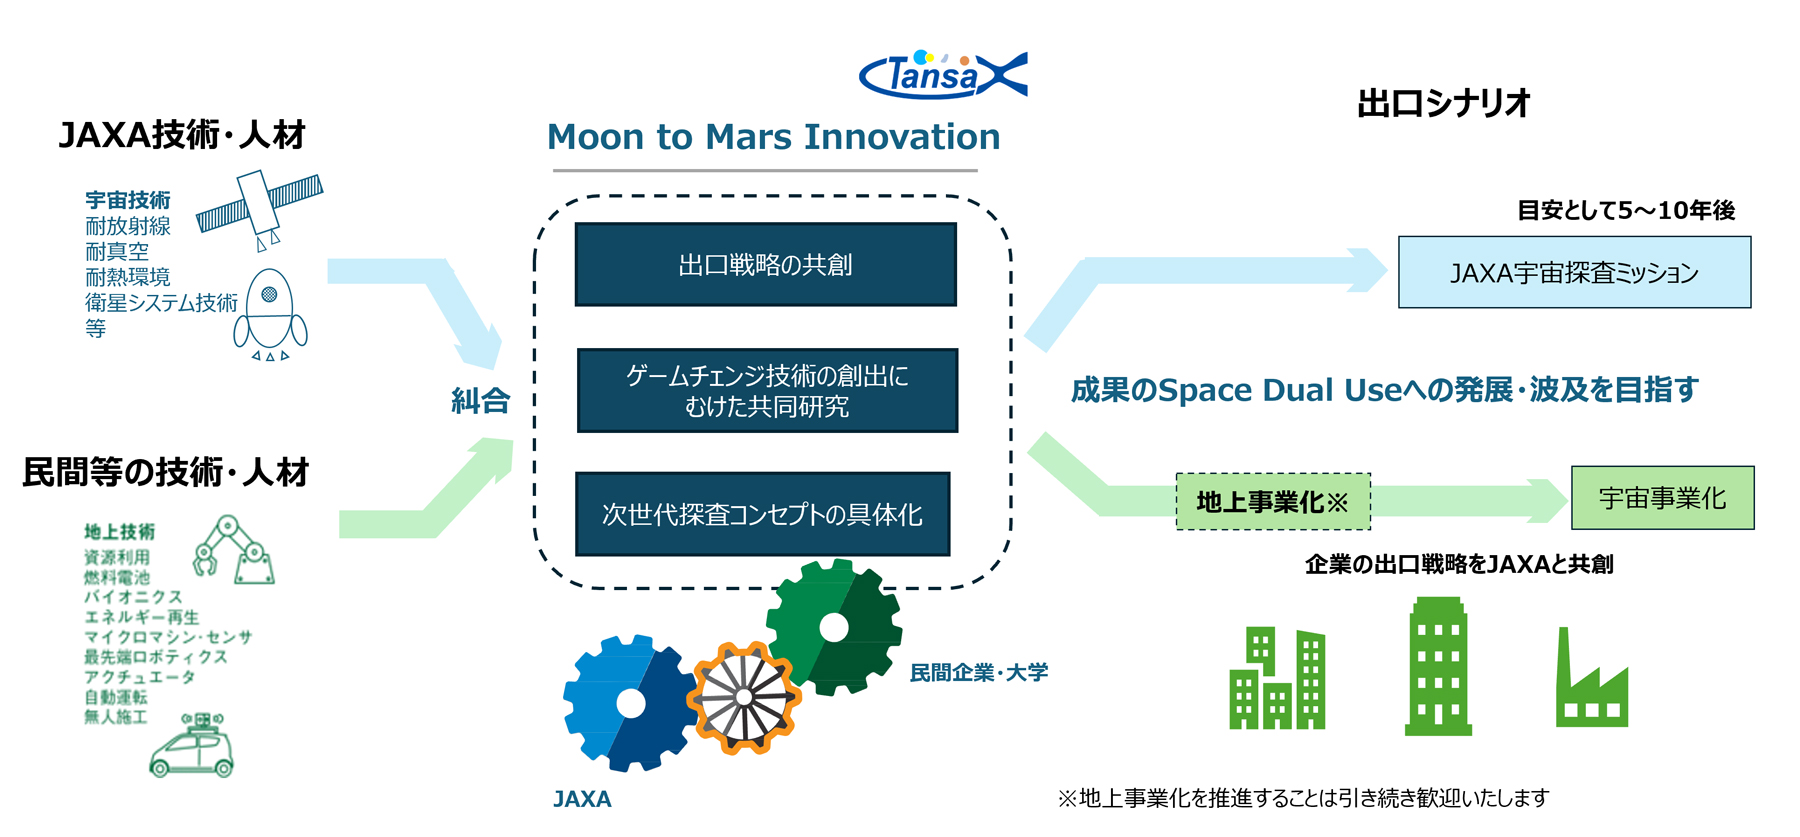 Moon to Mars Innovationについて